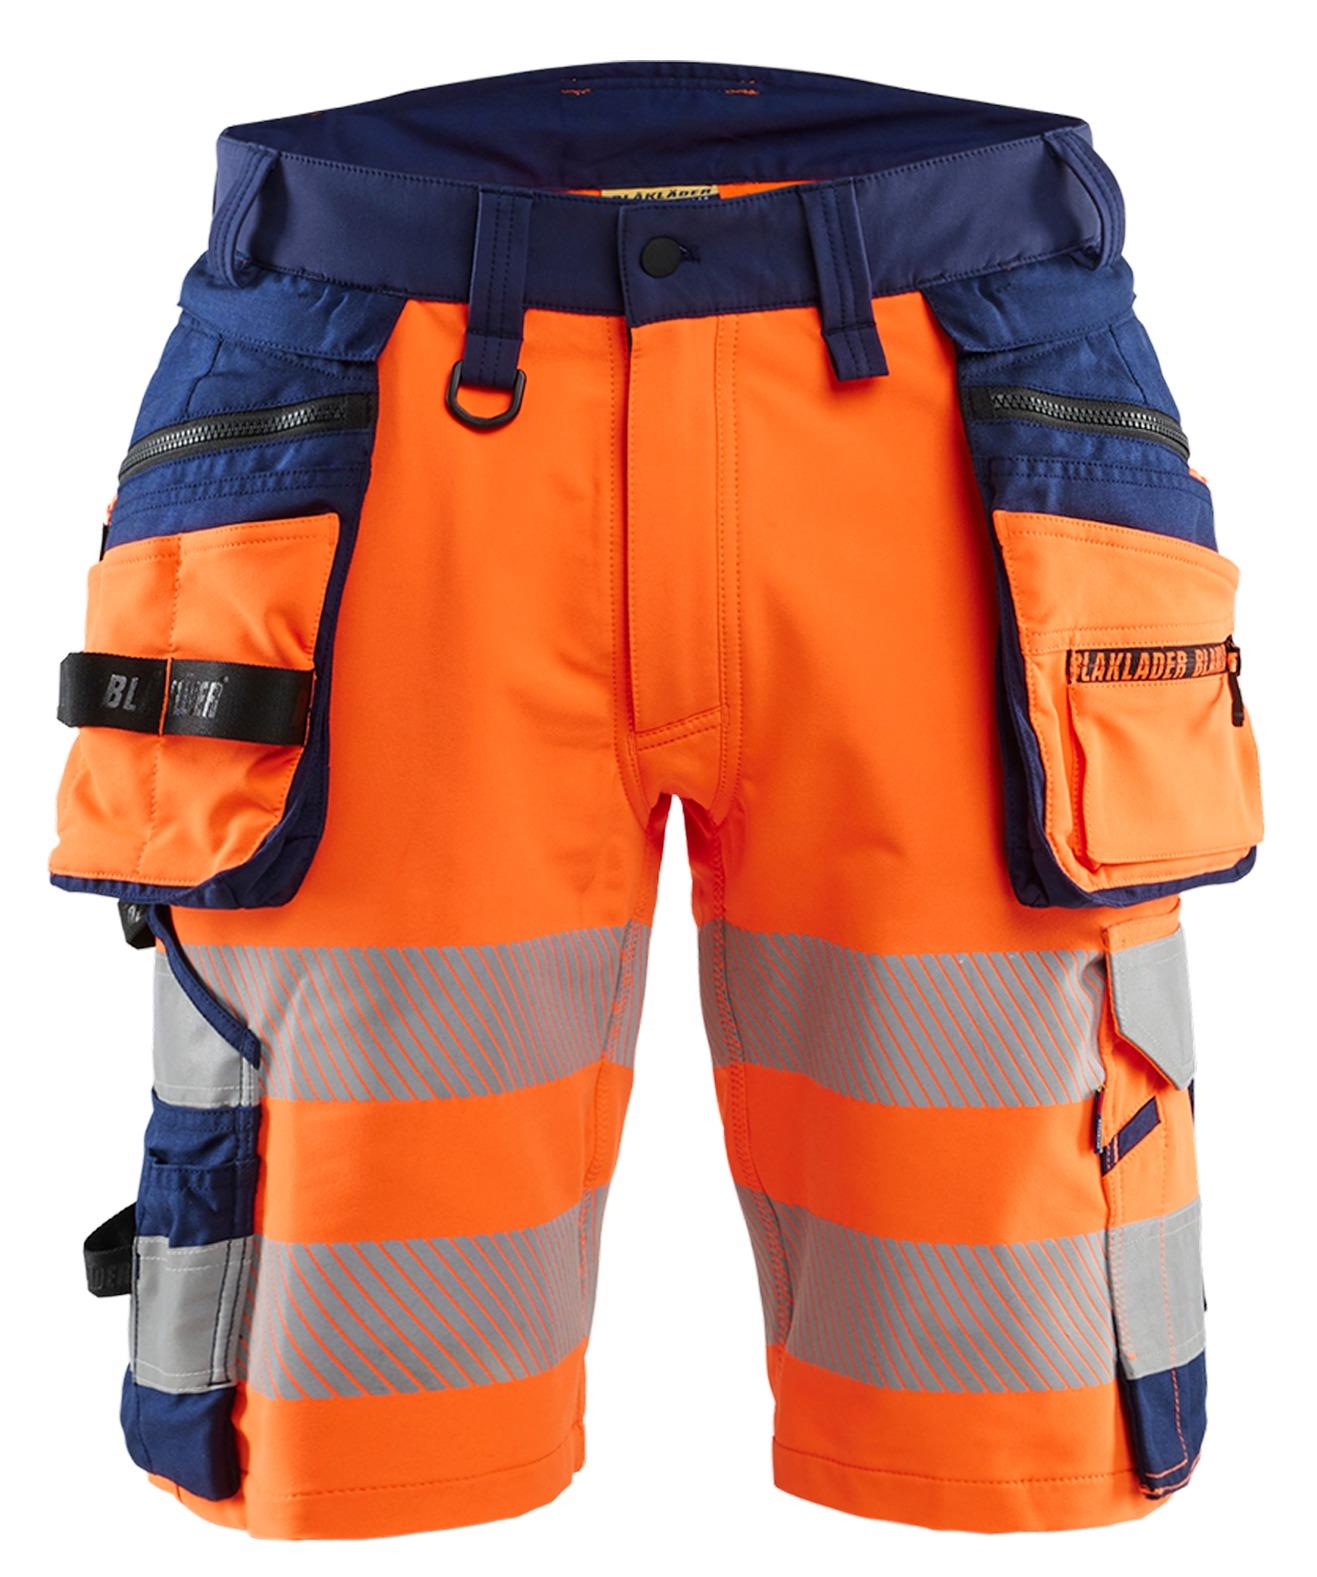 Blaklader orange/navy men's hi-vis 4-way stretch holster pocket shorts #1120